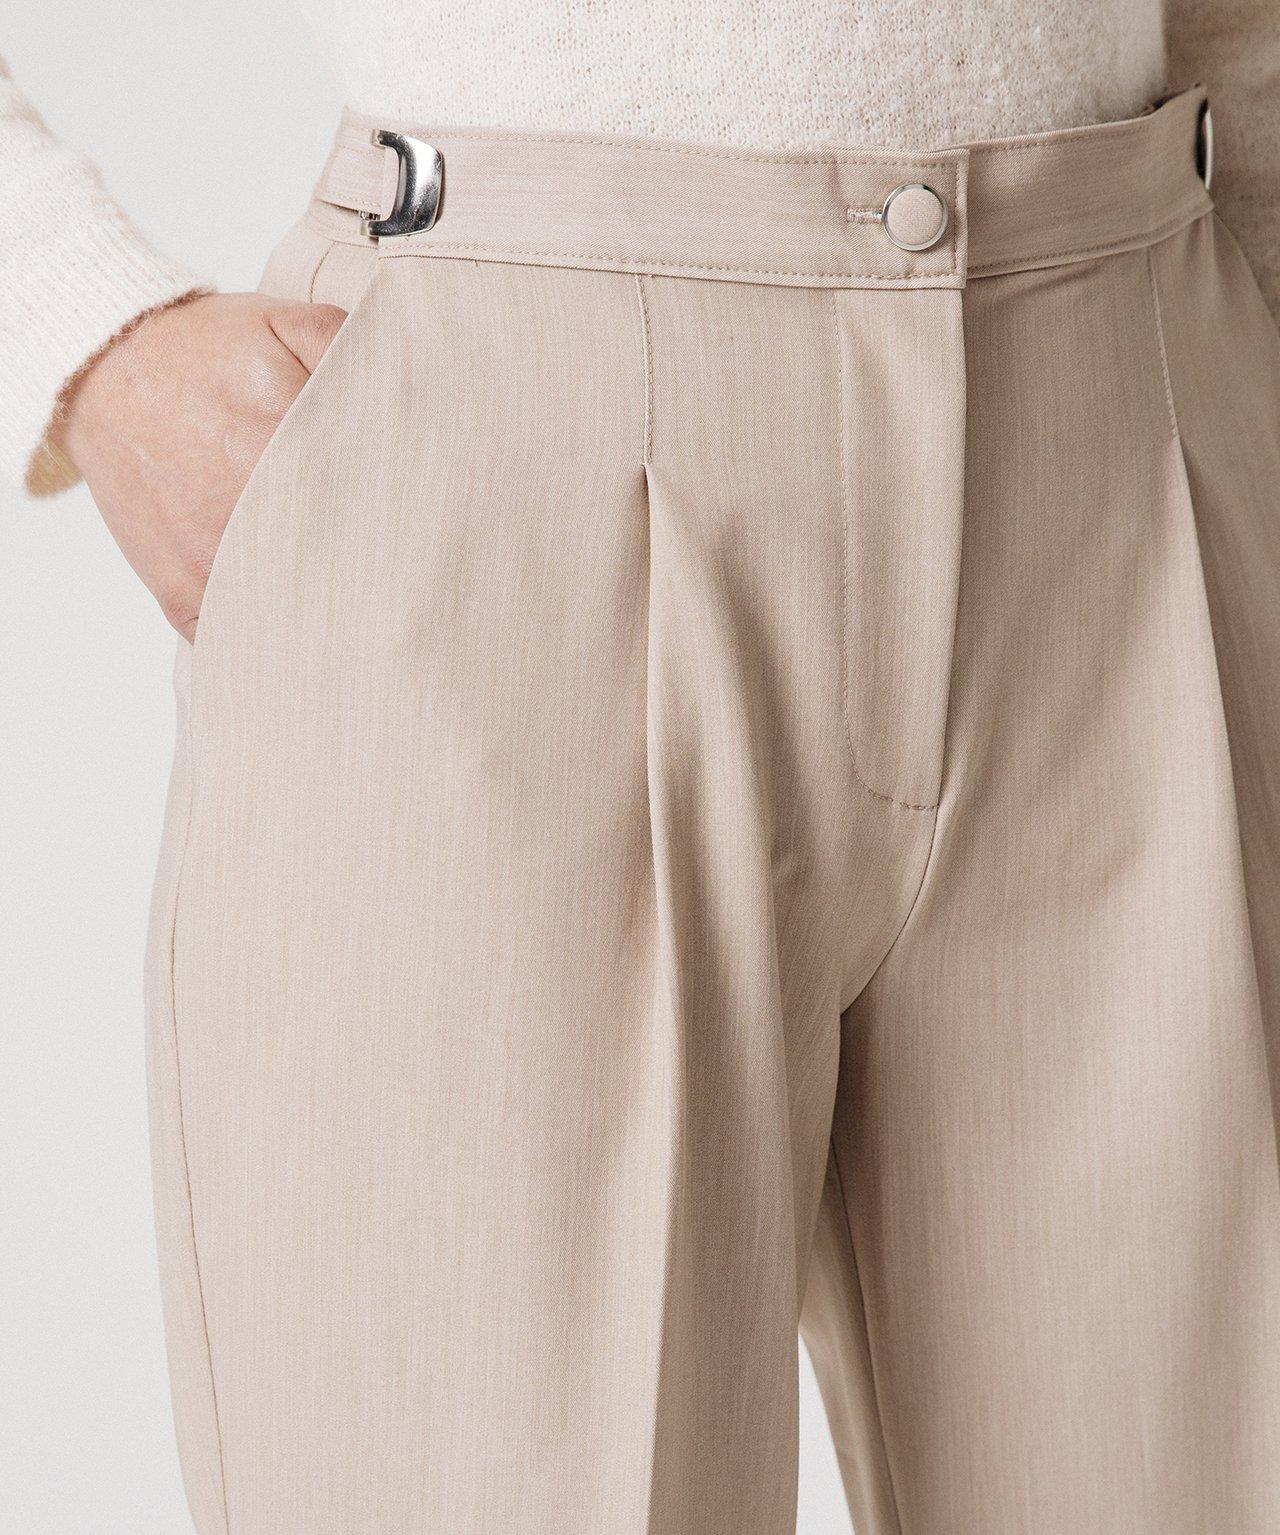 Damart  Pantalon ceinture réglable, 2 statures. 